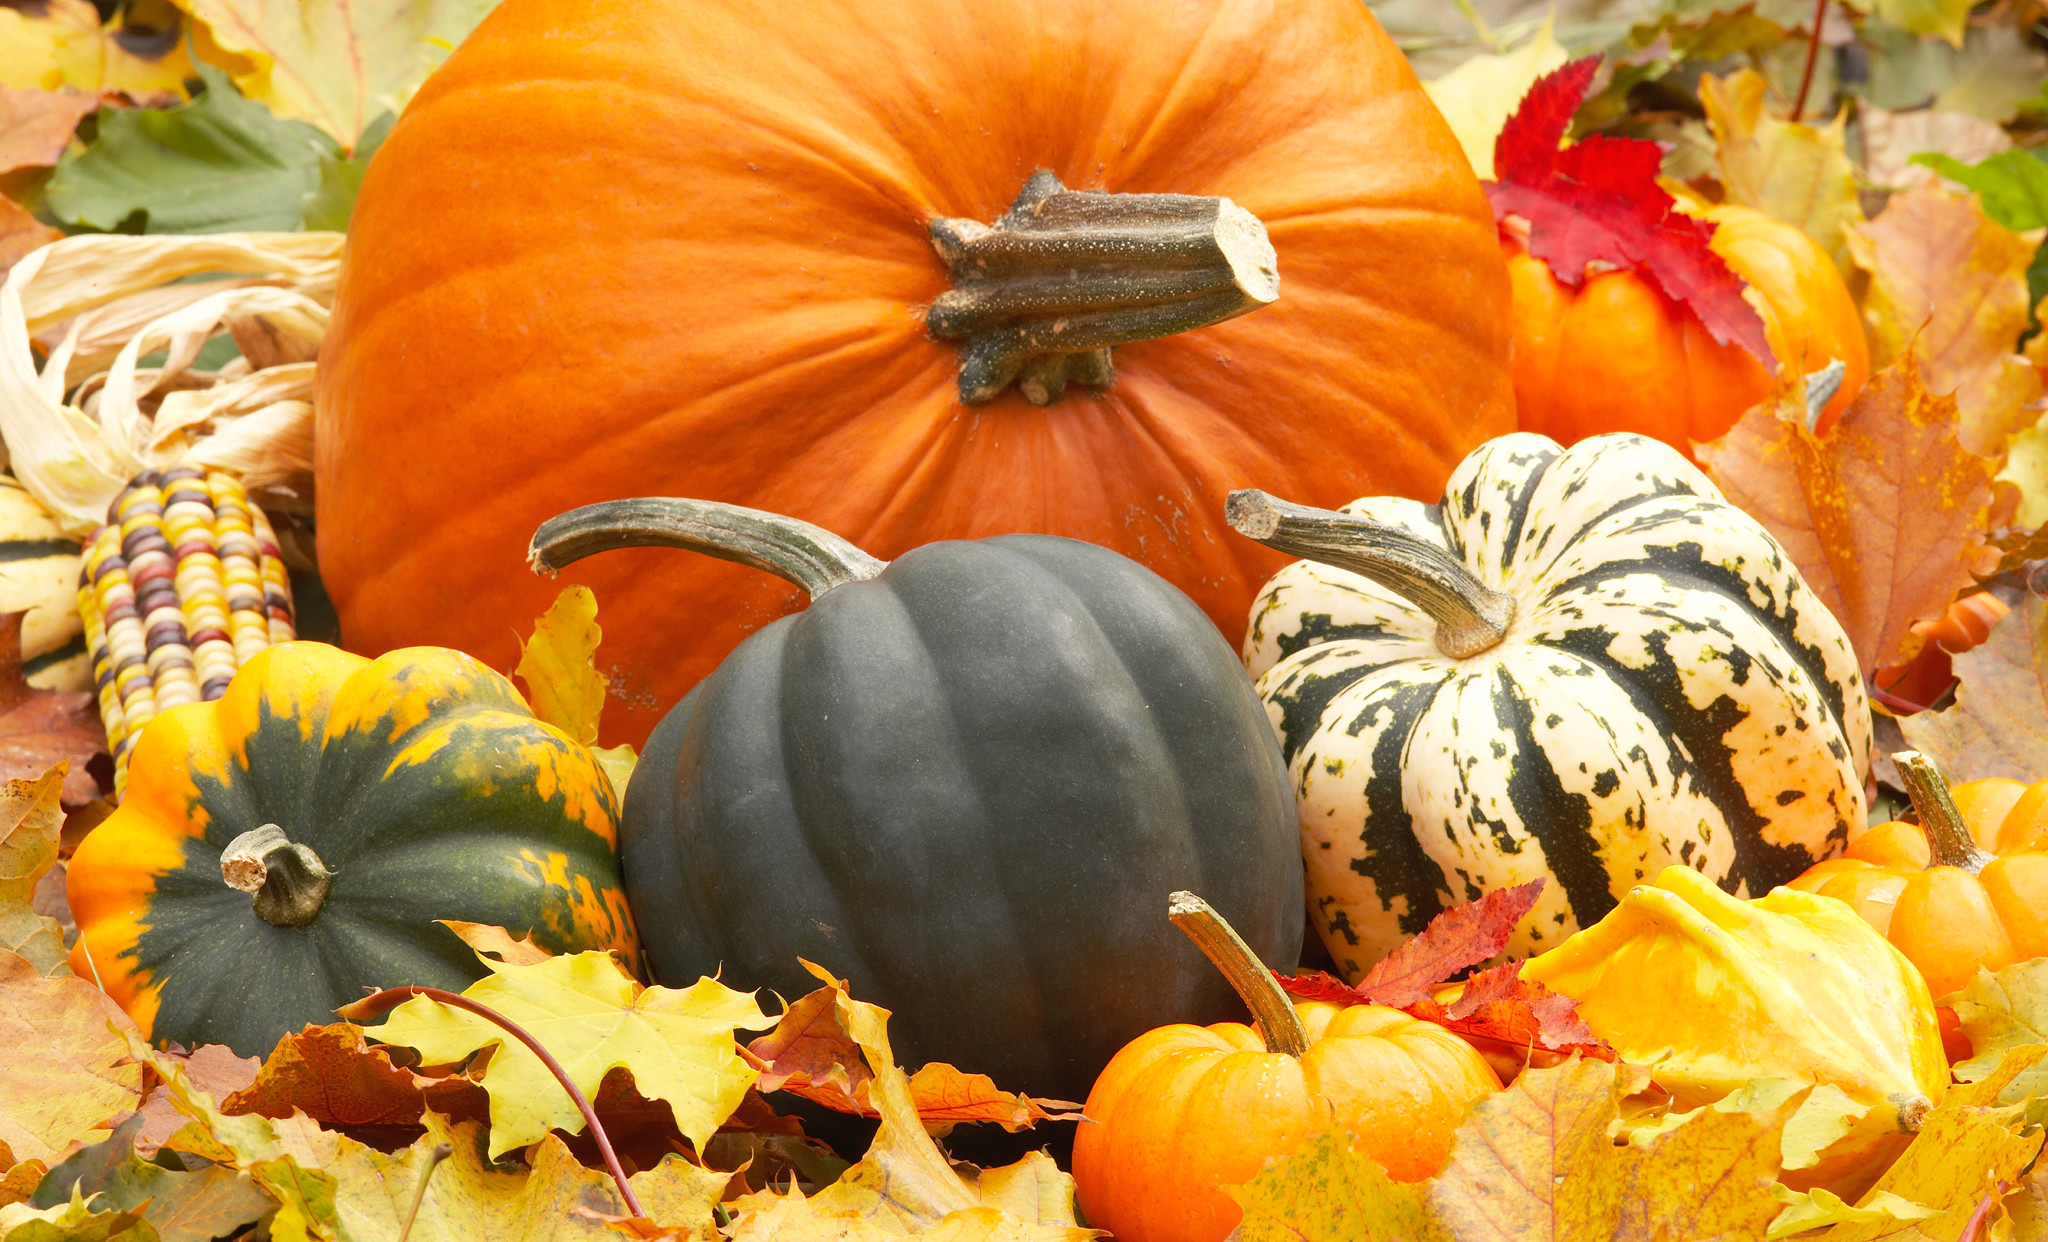 2048x1242 Filename: autumn_harvest_squash_fall_pumpkins_still_hd-wallpaper-1576273.jpg